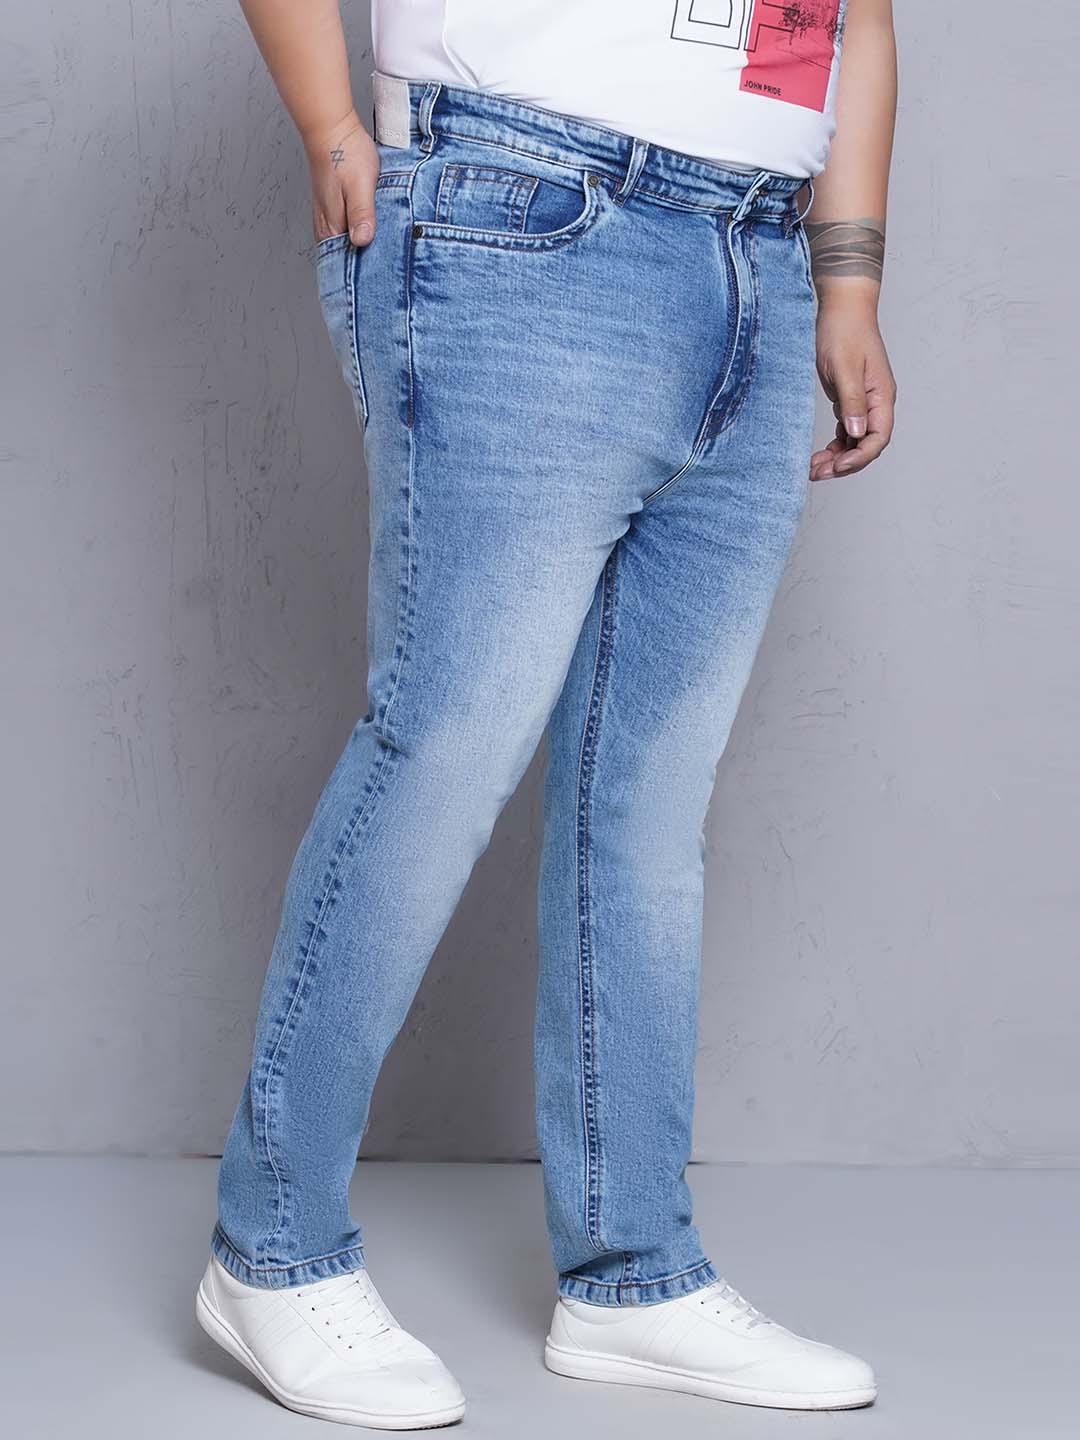 bottomwear/jeans/JPJ27117/jpj27117-3.jpg